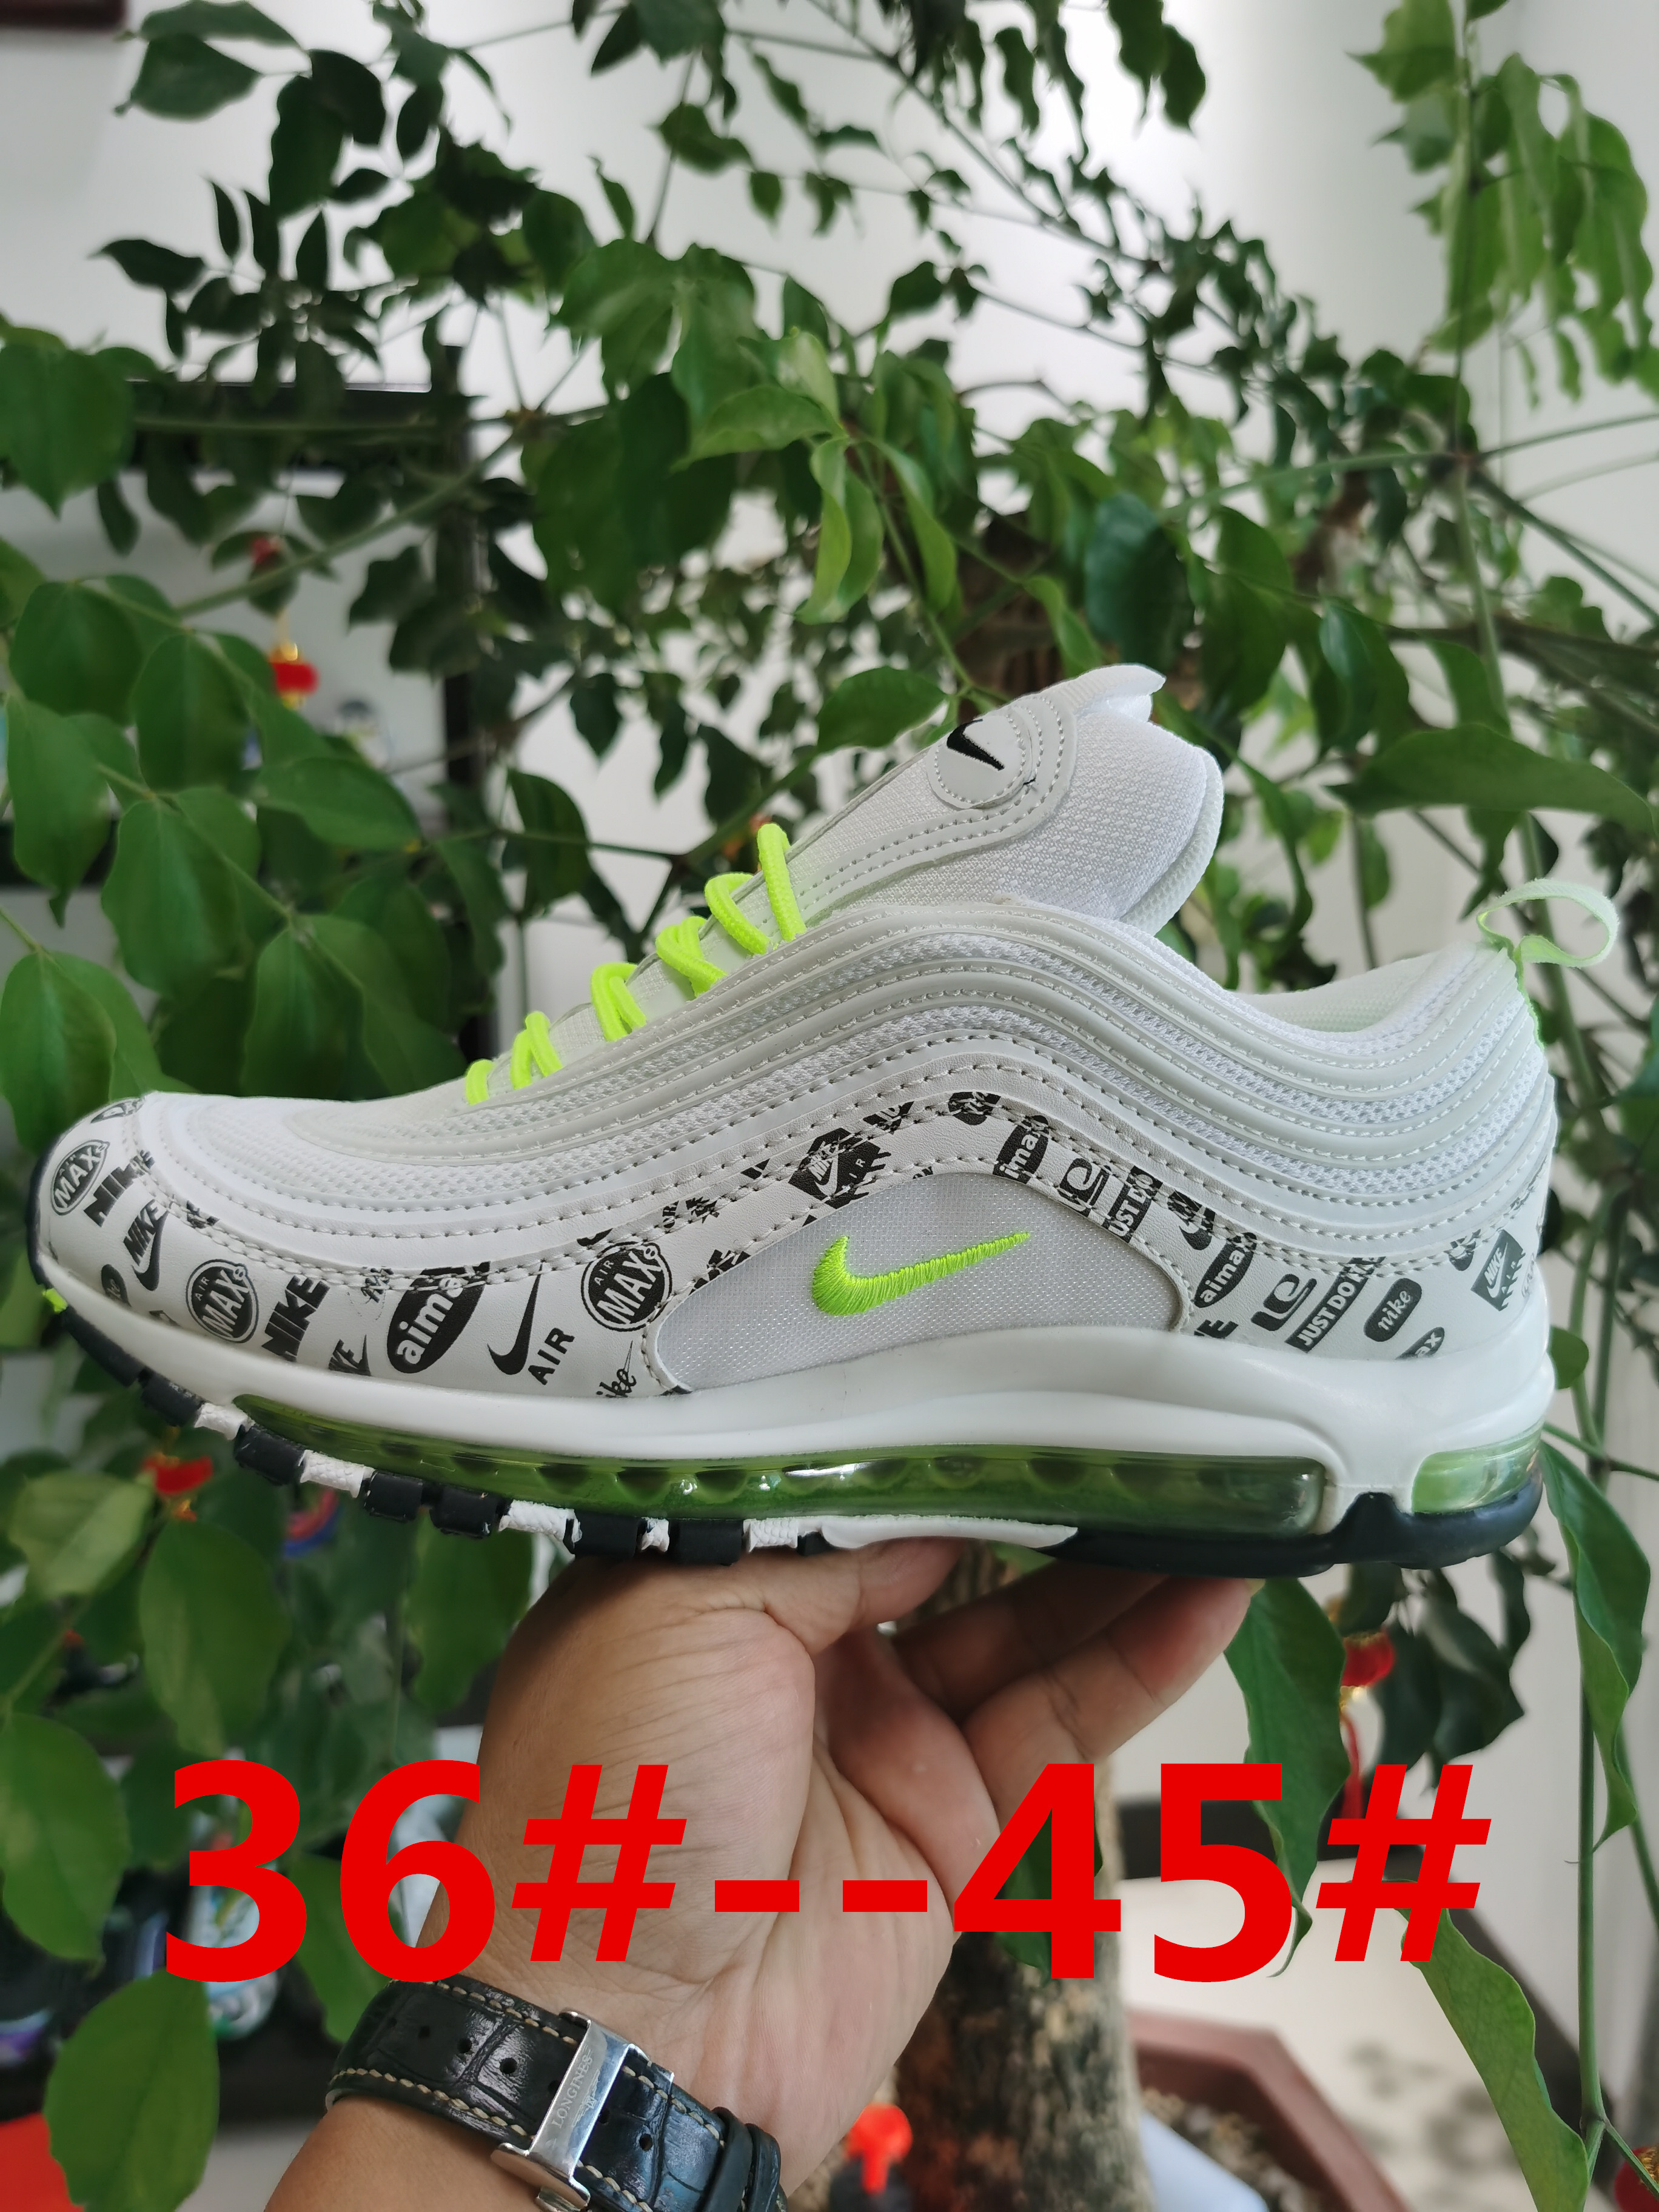 Nike Air VaporMax Plus White Cement Fluorscent Shoes